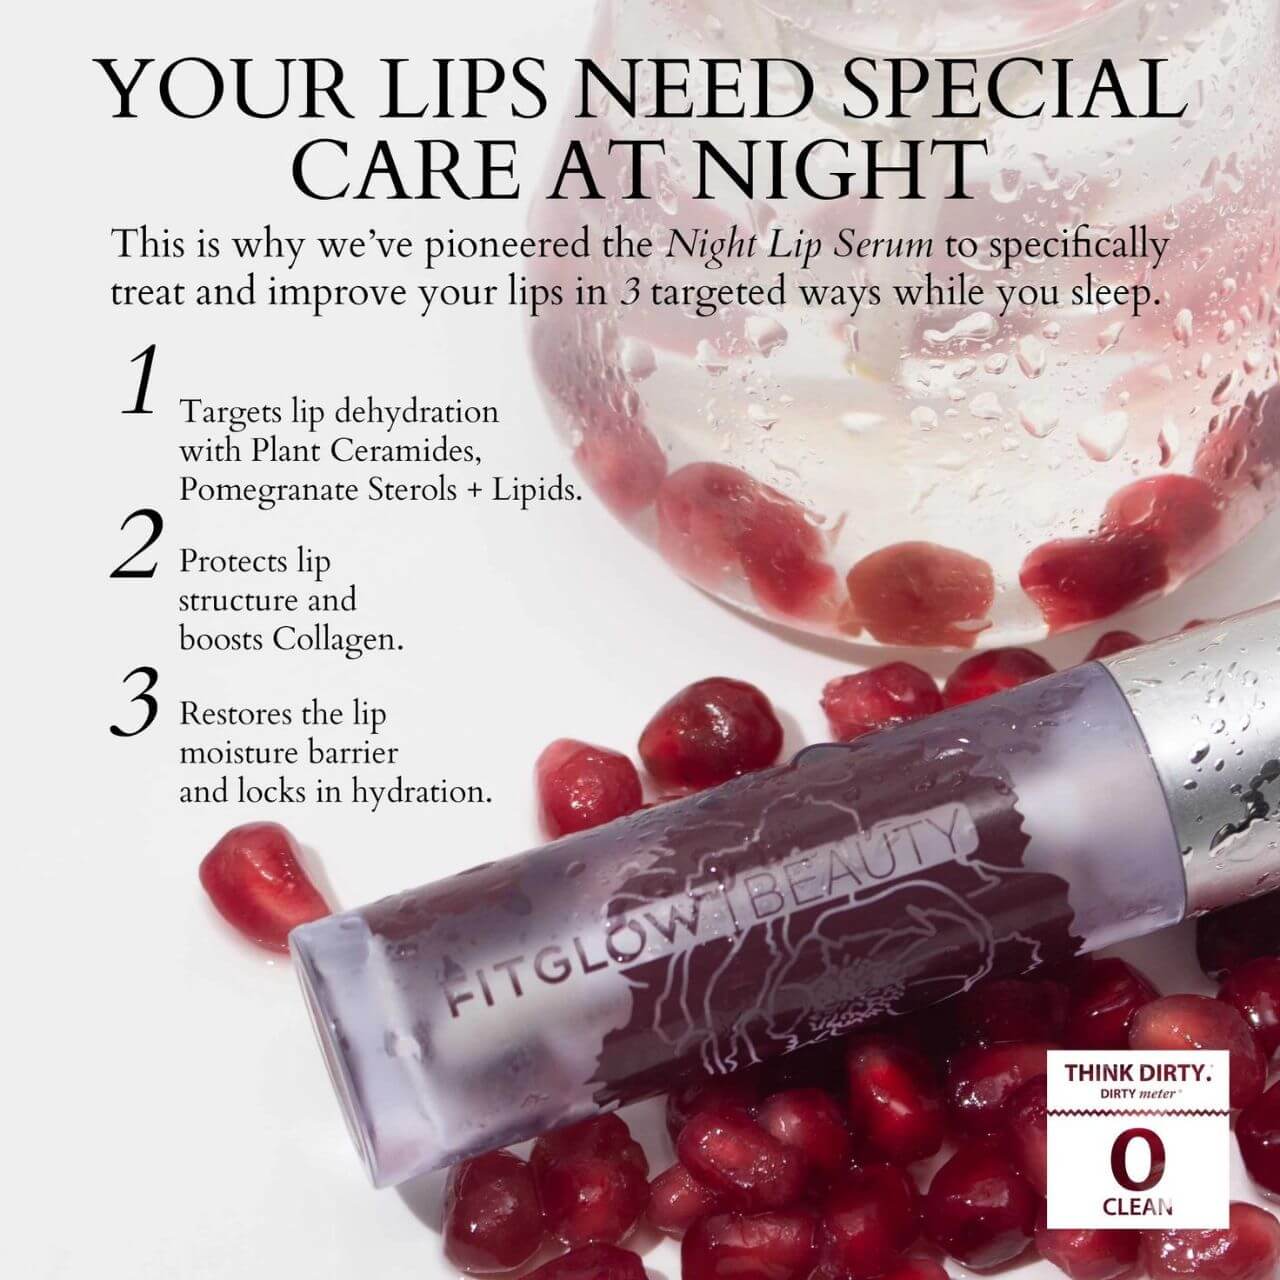 Fitglow Beauty Night Lip Serum Benefits